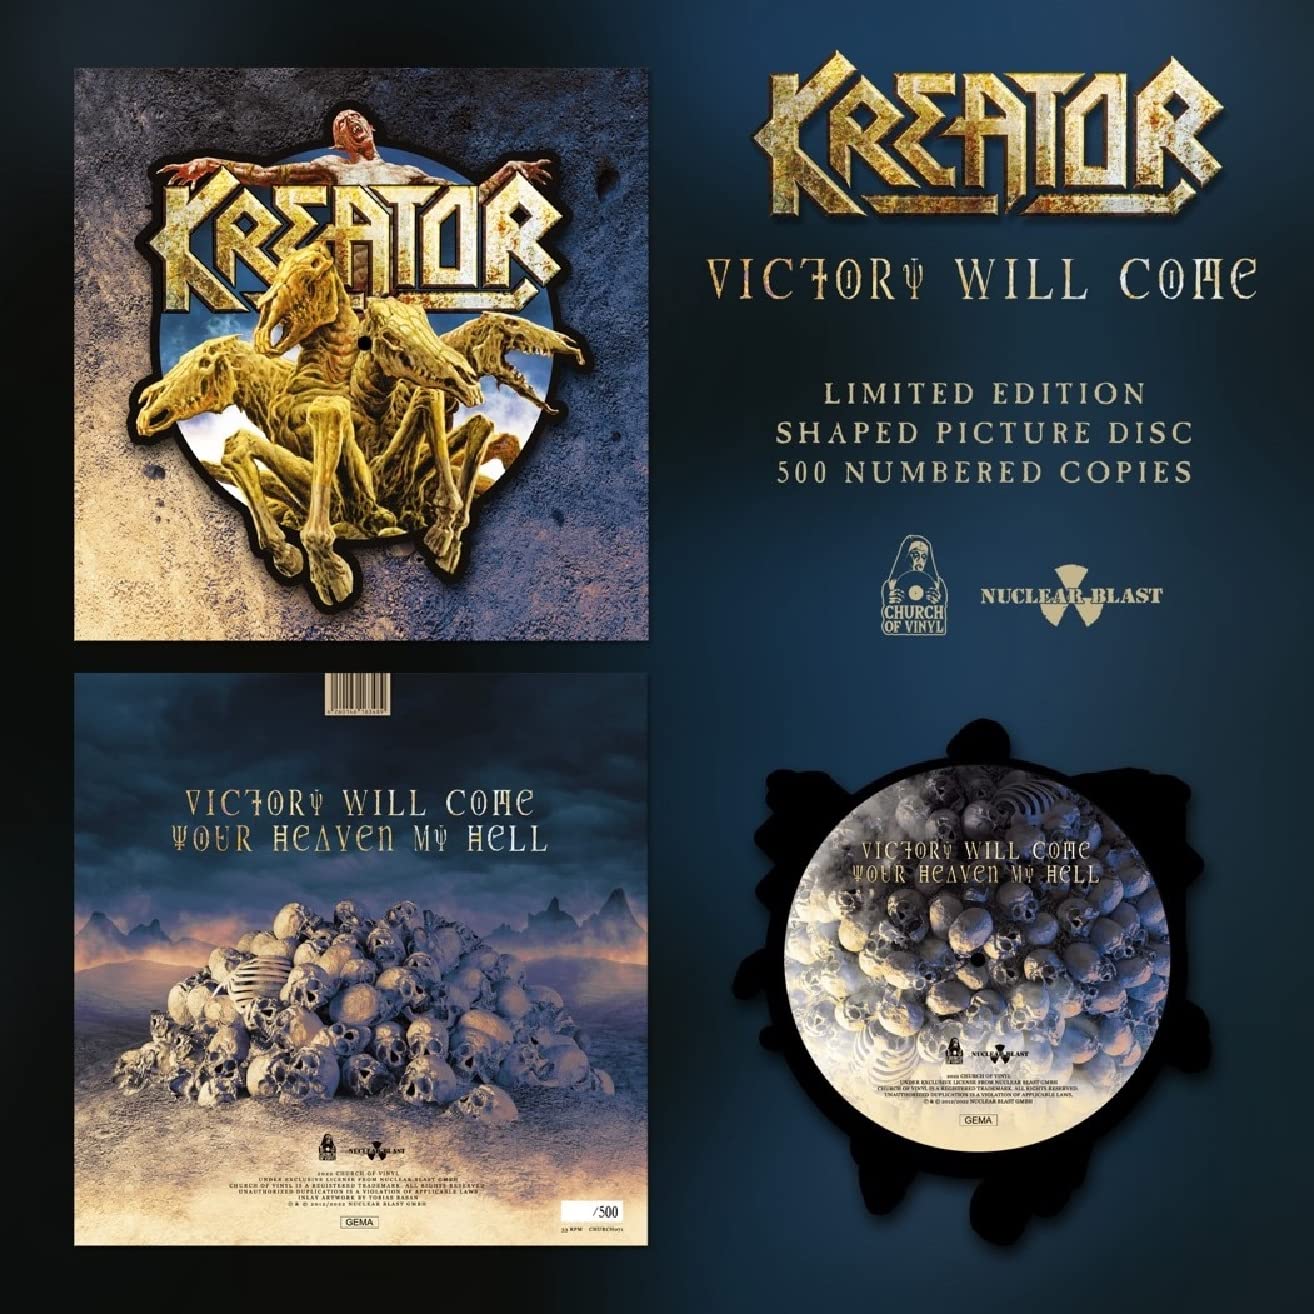 Vinile Kreator - Victory Will Come (Ltd Shaped Picture Disc) NUOVO SIGILLATO, EDIZIONE DEL 03/02/2023 SUBITO DISPONIBILE